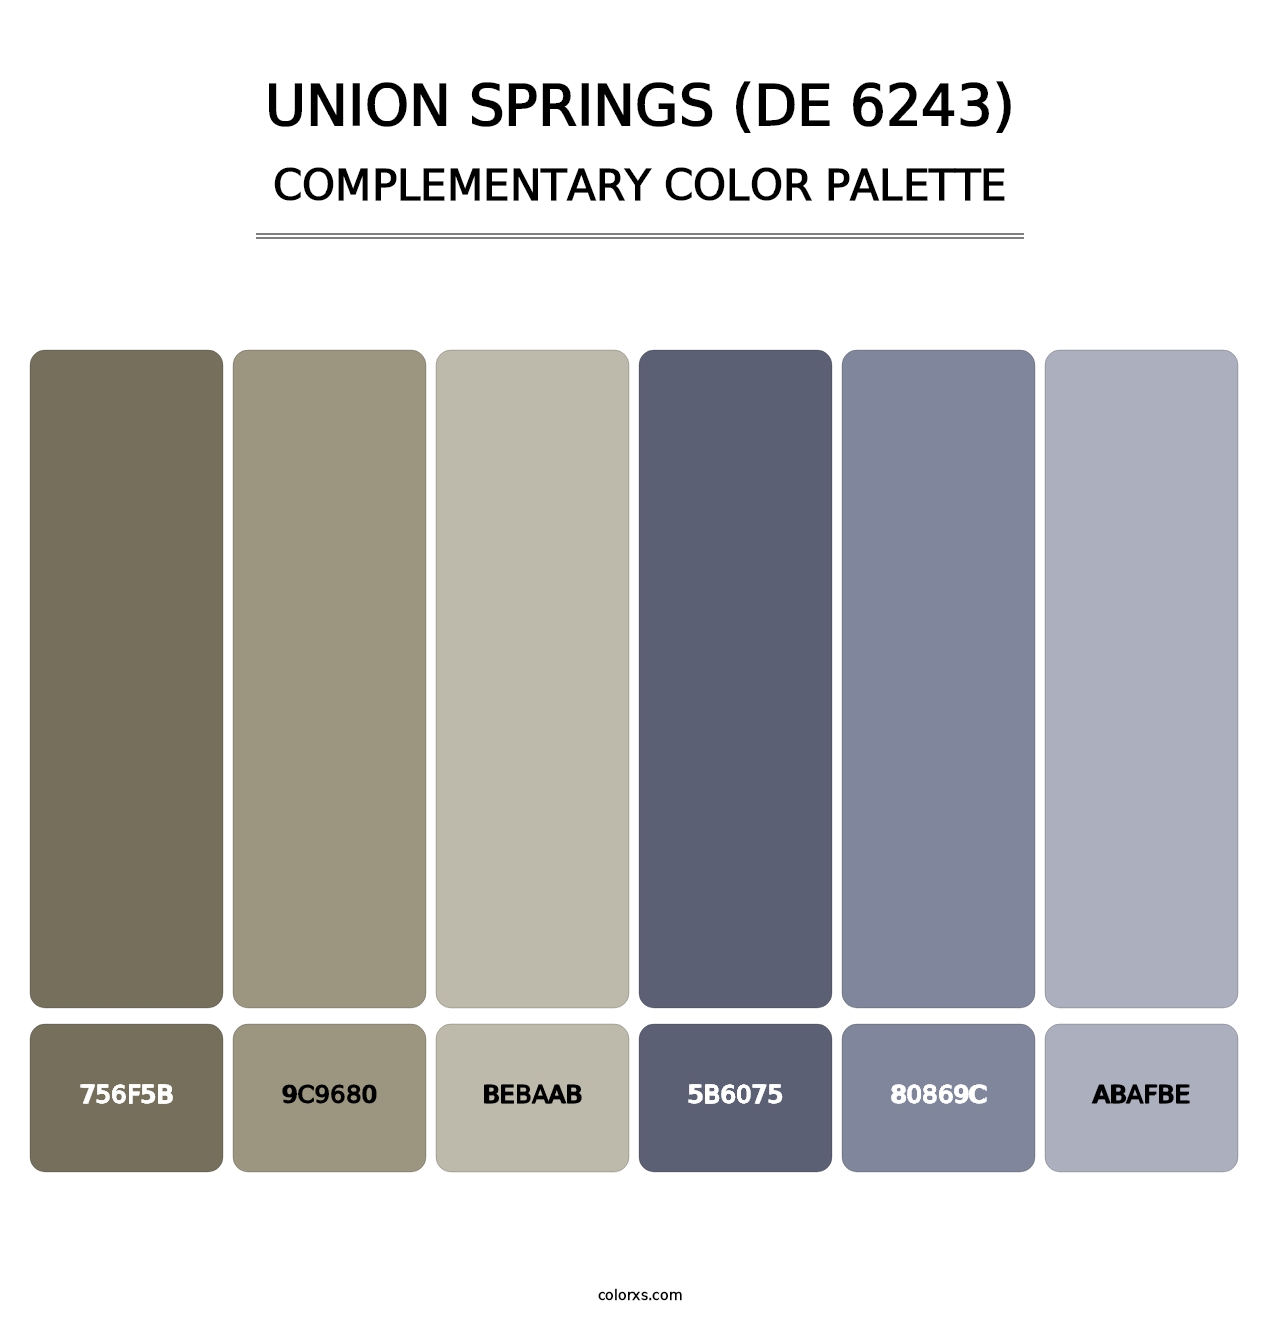 Union Springs (DE 6243) - Complementary Color Palette